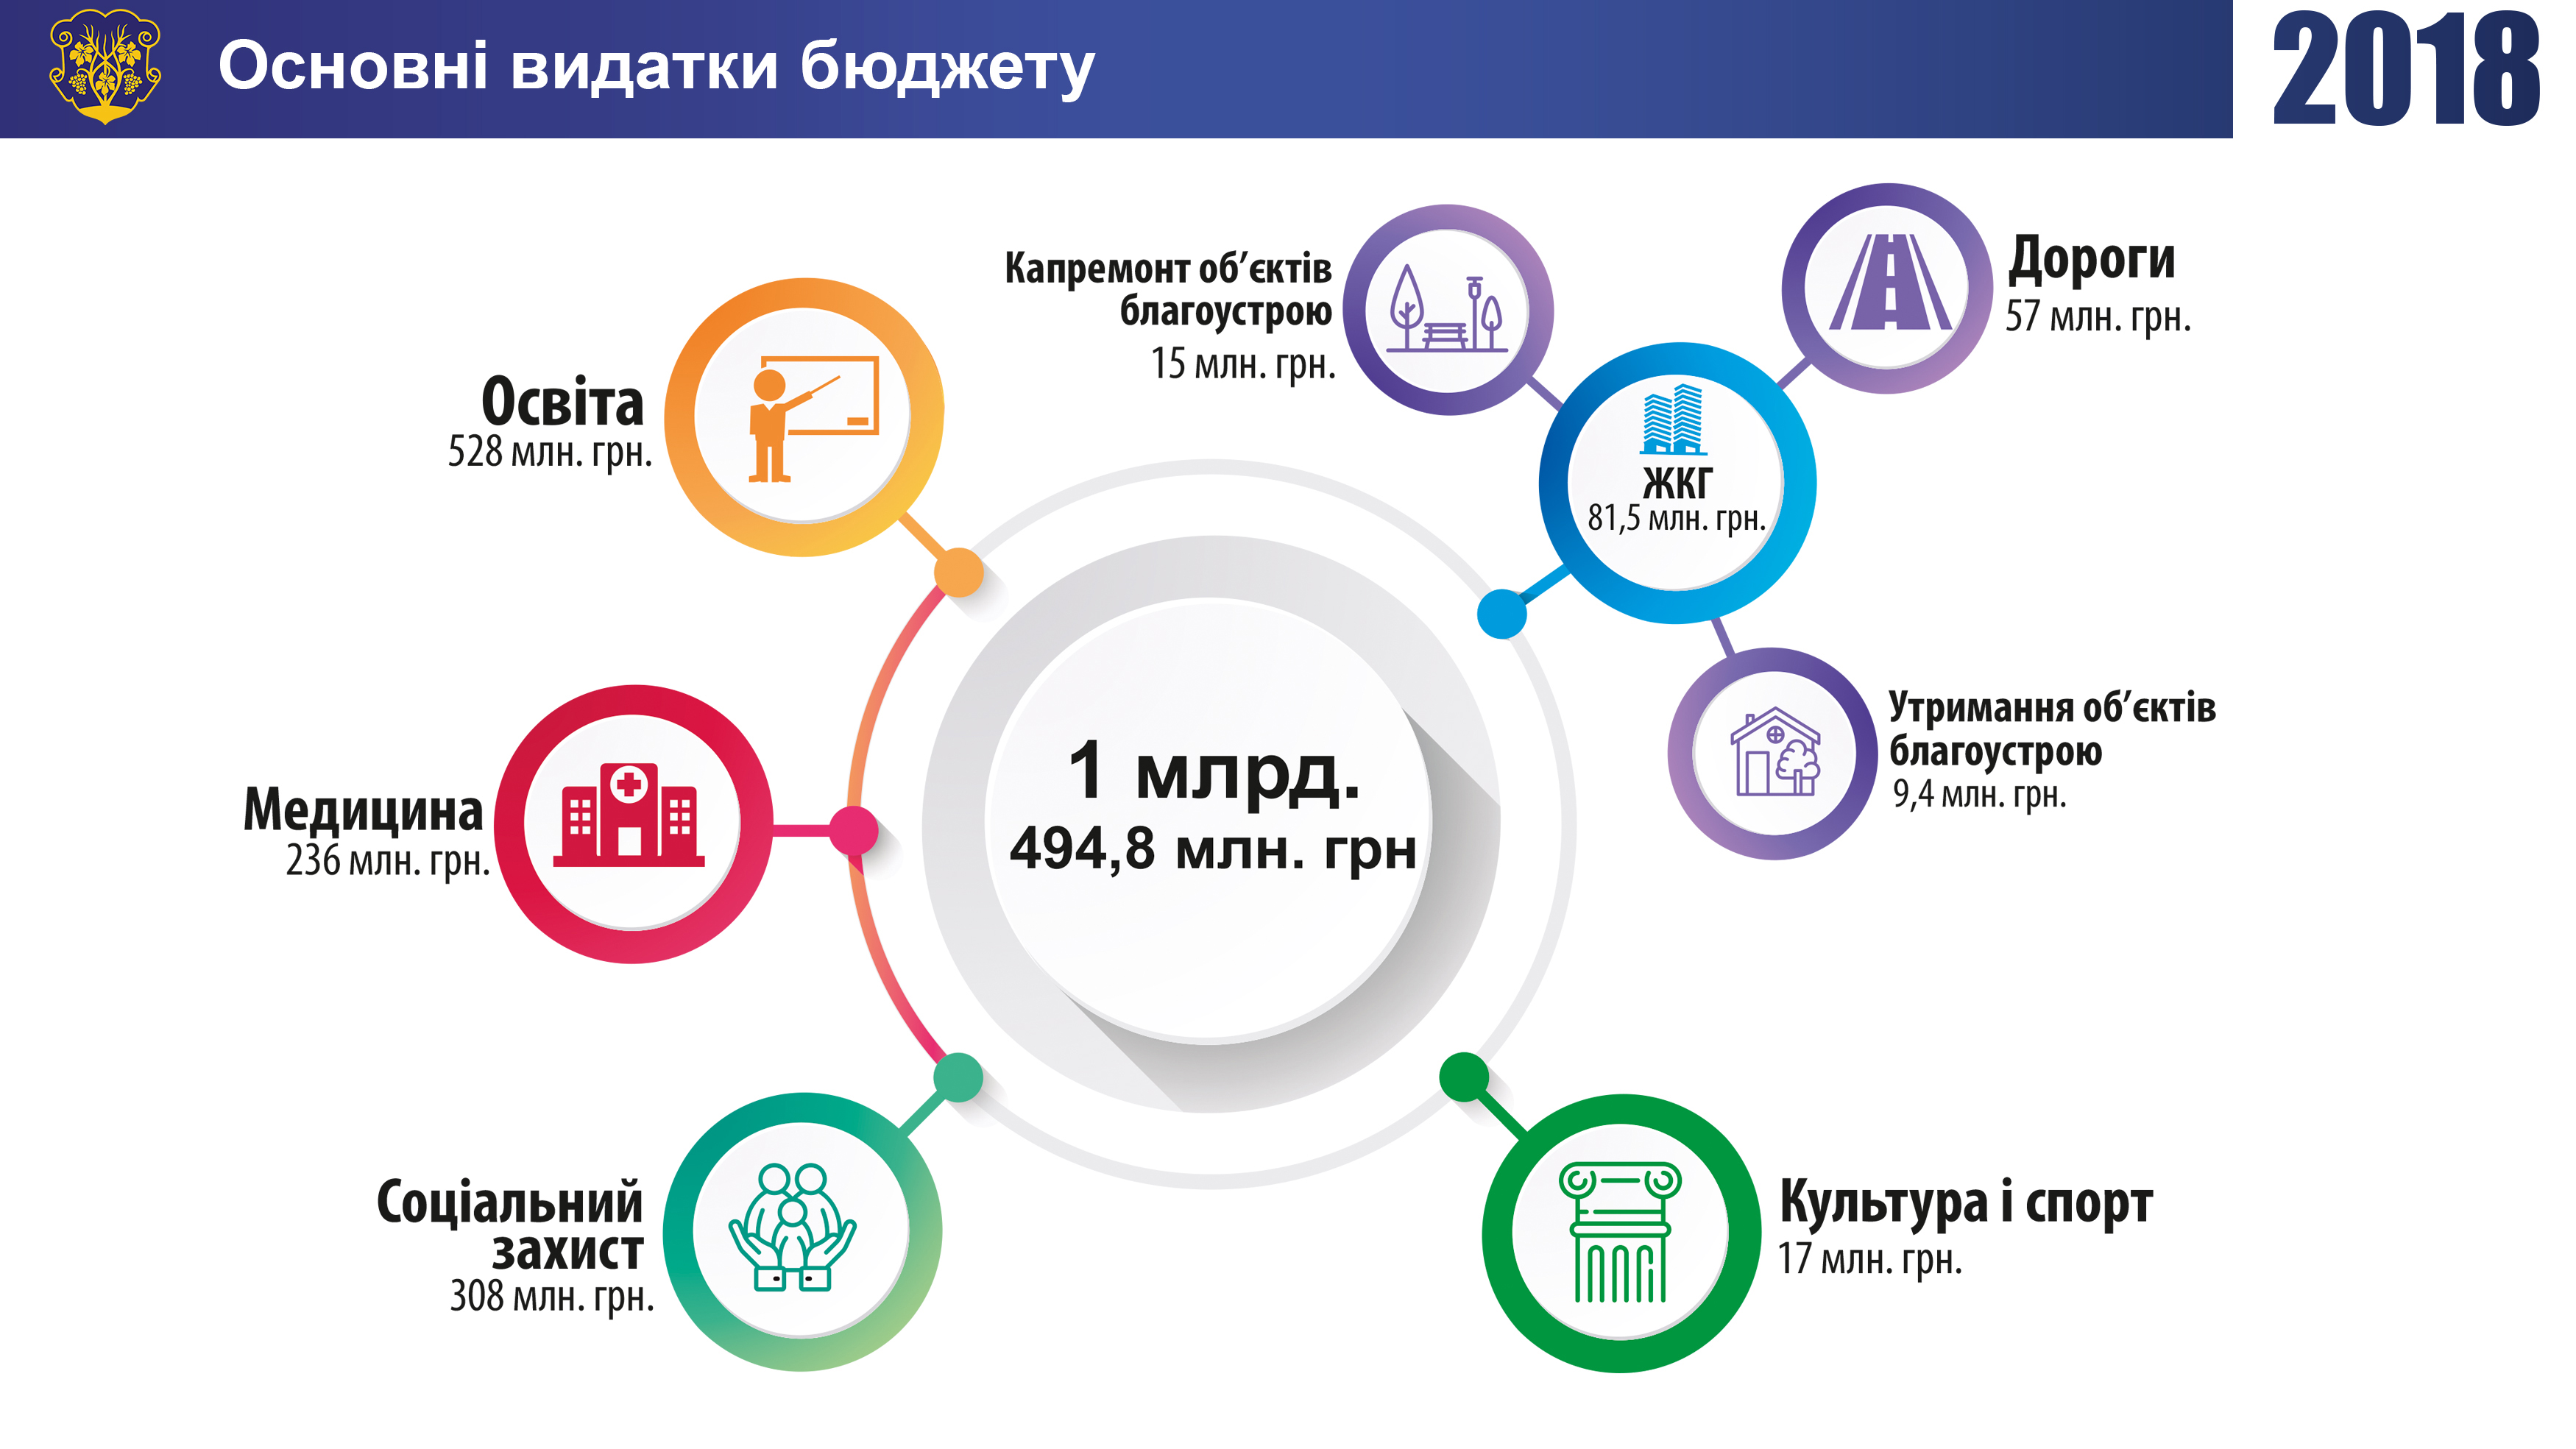 Основні показники виконання міського бюджету Ужгорода за 2018 рік